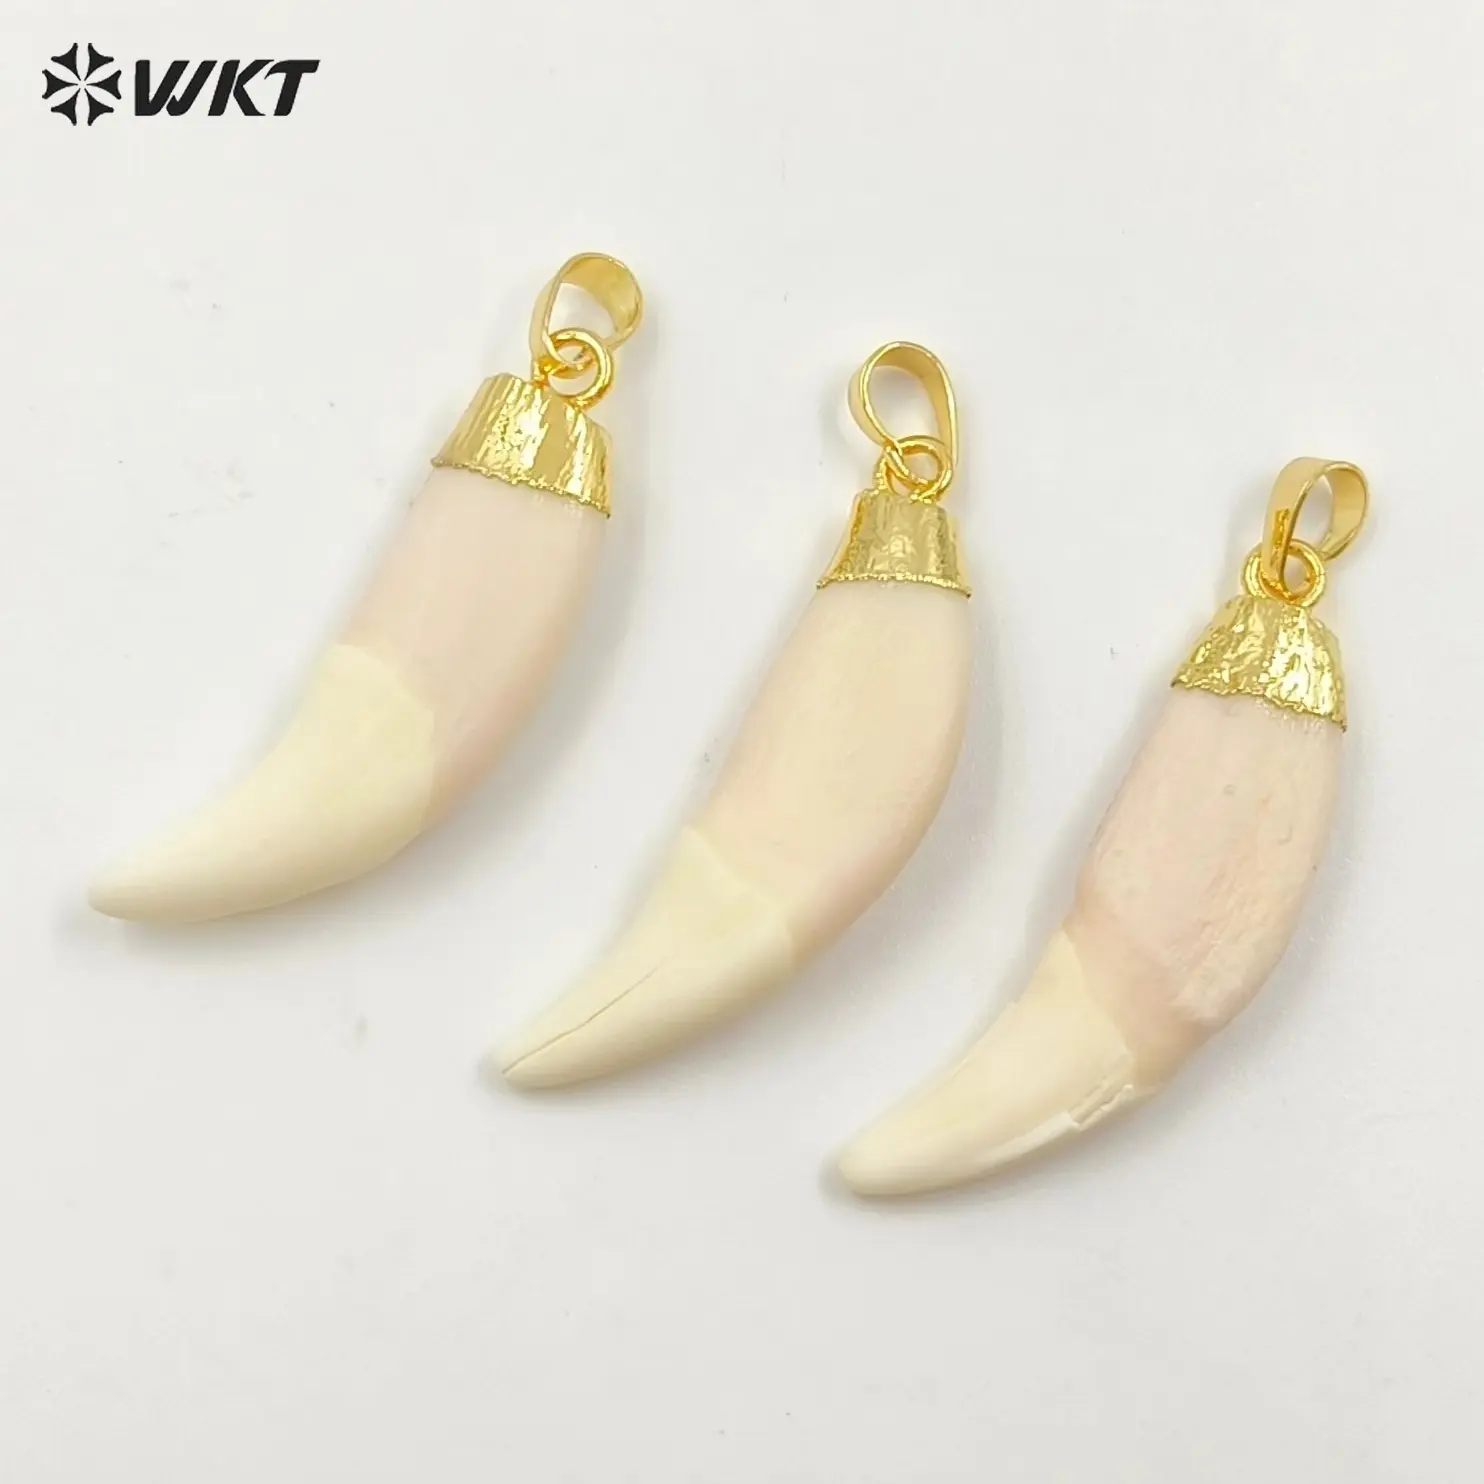 WT-P241 WKT vente en gros de pendentifs de dents artificielles avec capuchon de couleur or étonnants pendentifs en os de corne brute pour la fabrication de bijoux